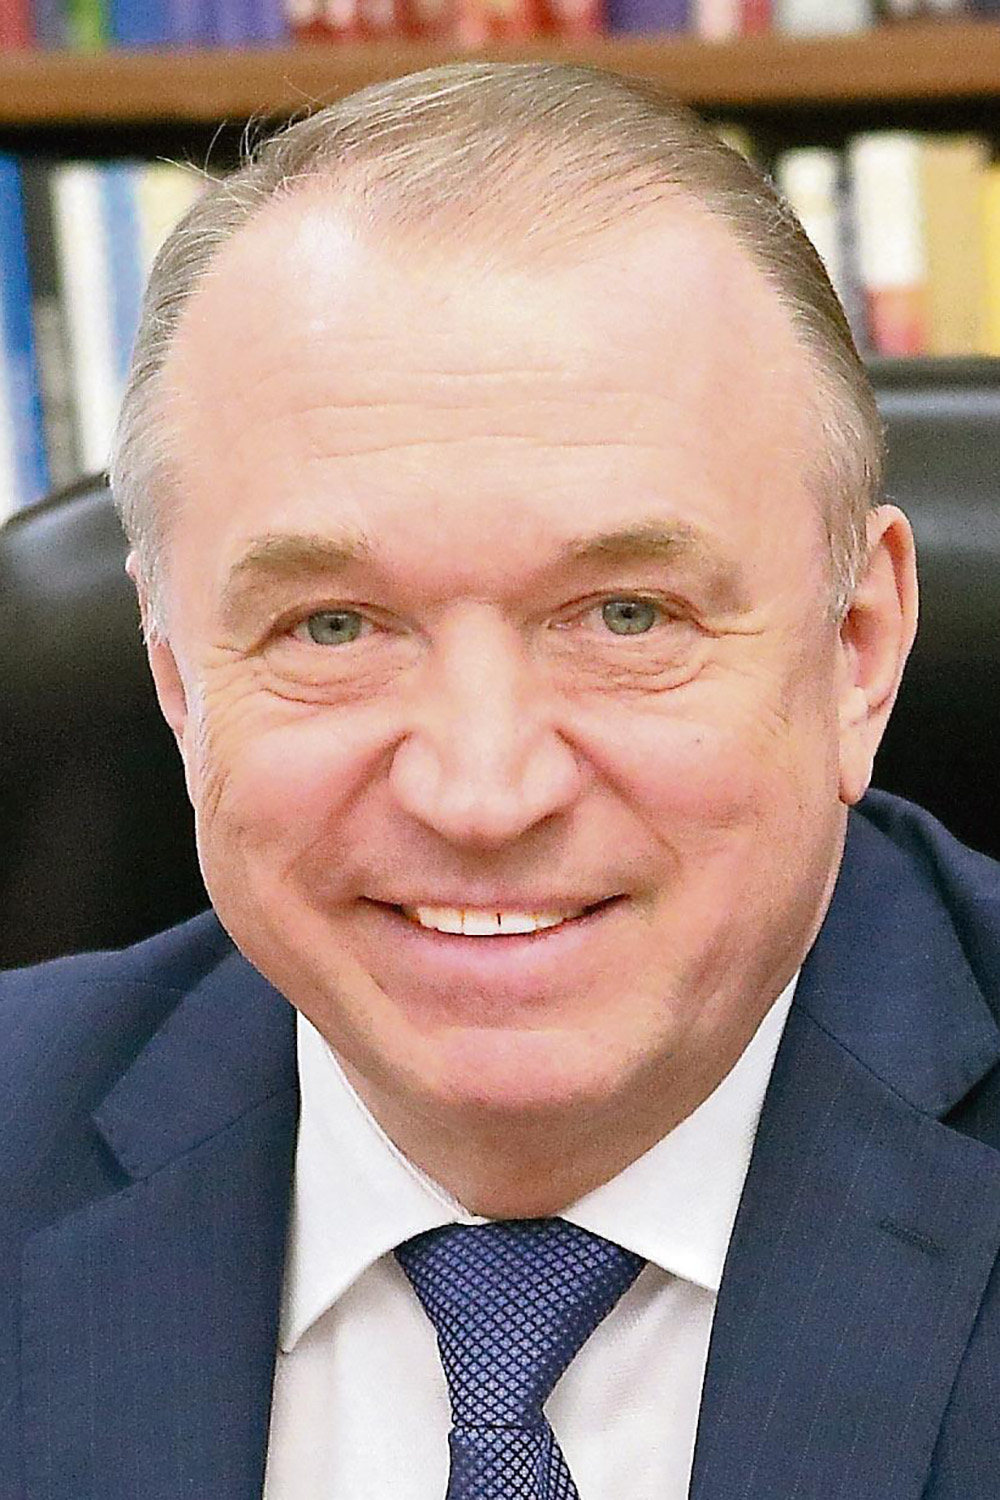 Сергей Николаевич Катырин